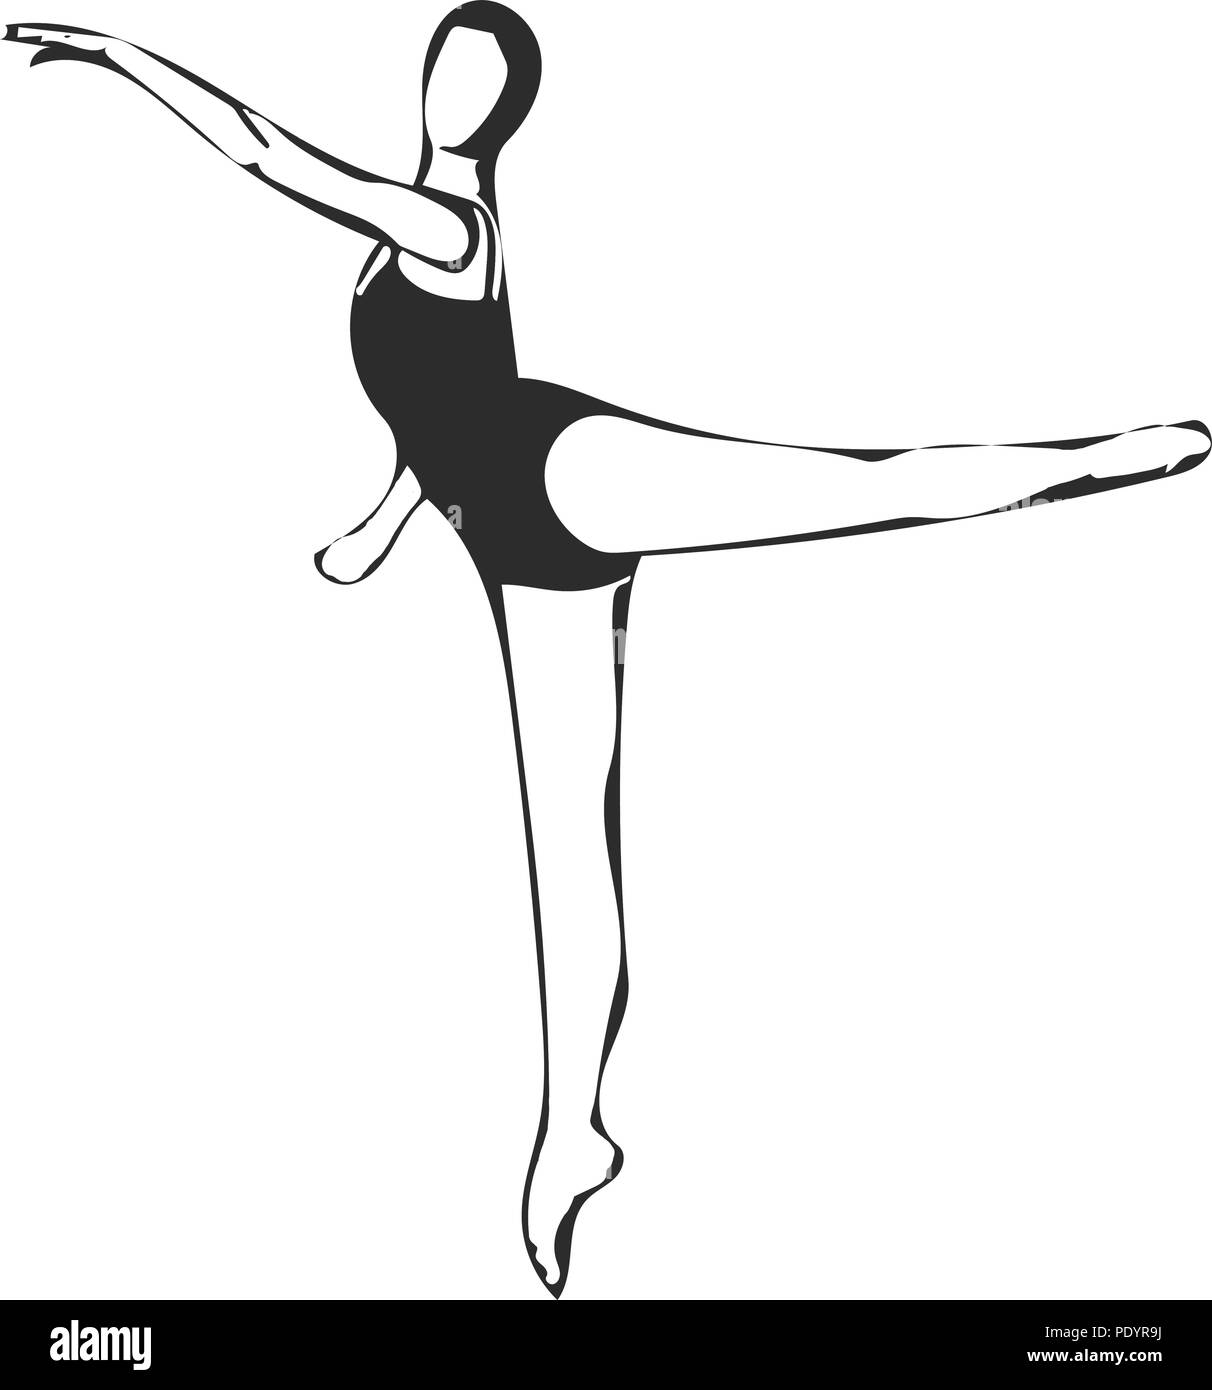 Bailarina De Ballet Mujer Color Dibujo Grabado Vector Ilustración.  Imitación De Estilo De Tablero De Rascar. Imagen Dibujada A Mano En Blanco  Y Negro. Ilustraciones svg, vectoriales, clip art vectorizado libre de